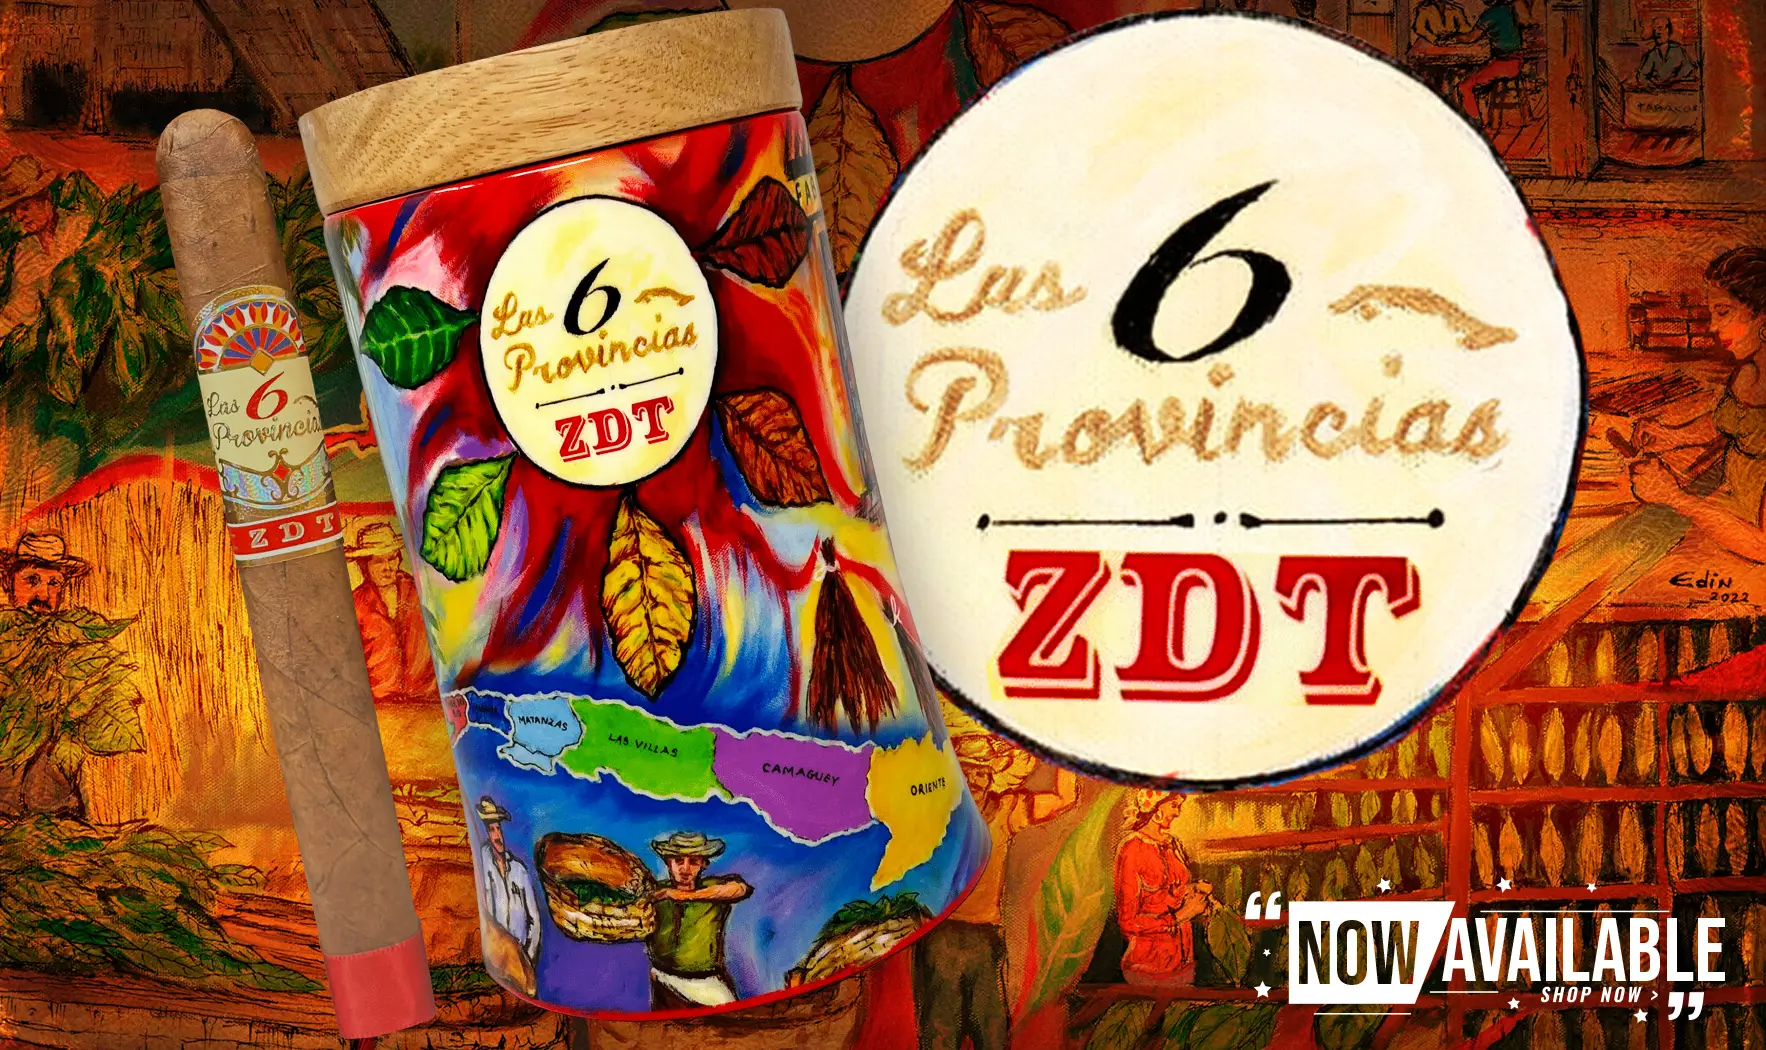 Espinosa Las 6 Provincias ZDT